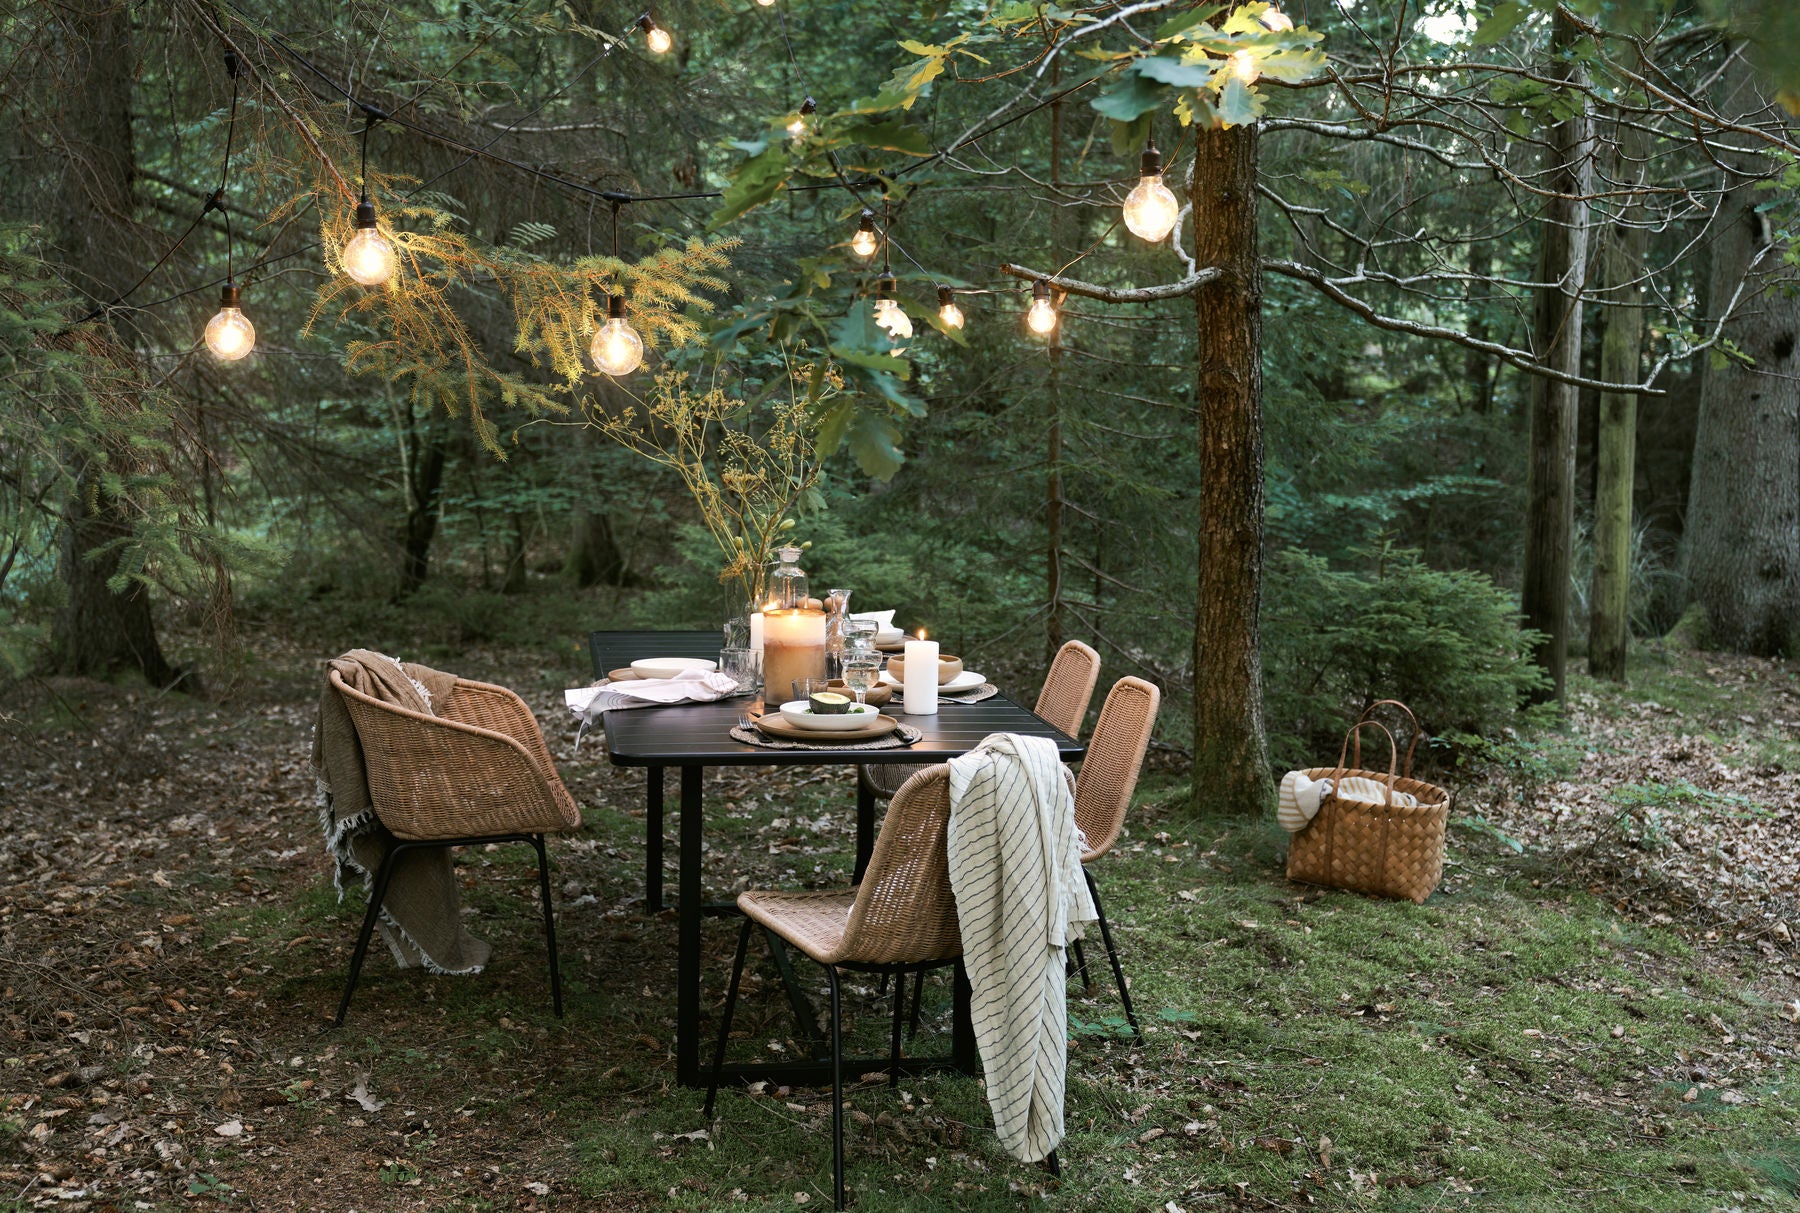 Outdoor Möbel und Dekoration im Wald inszeniert